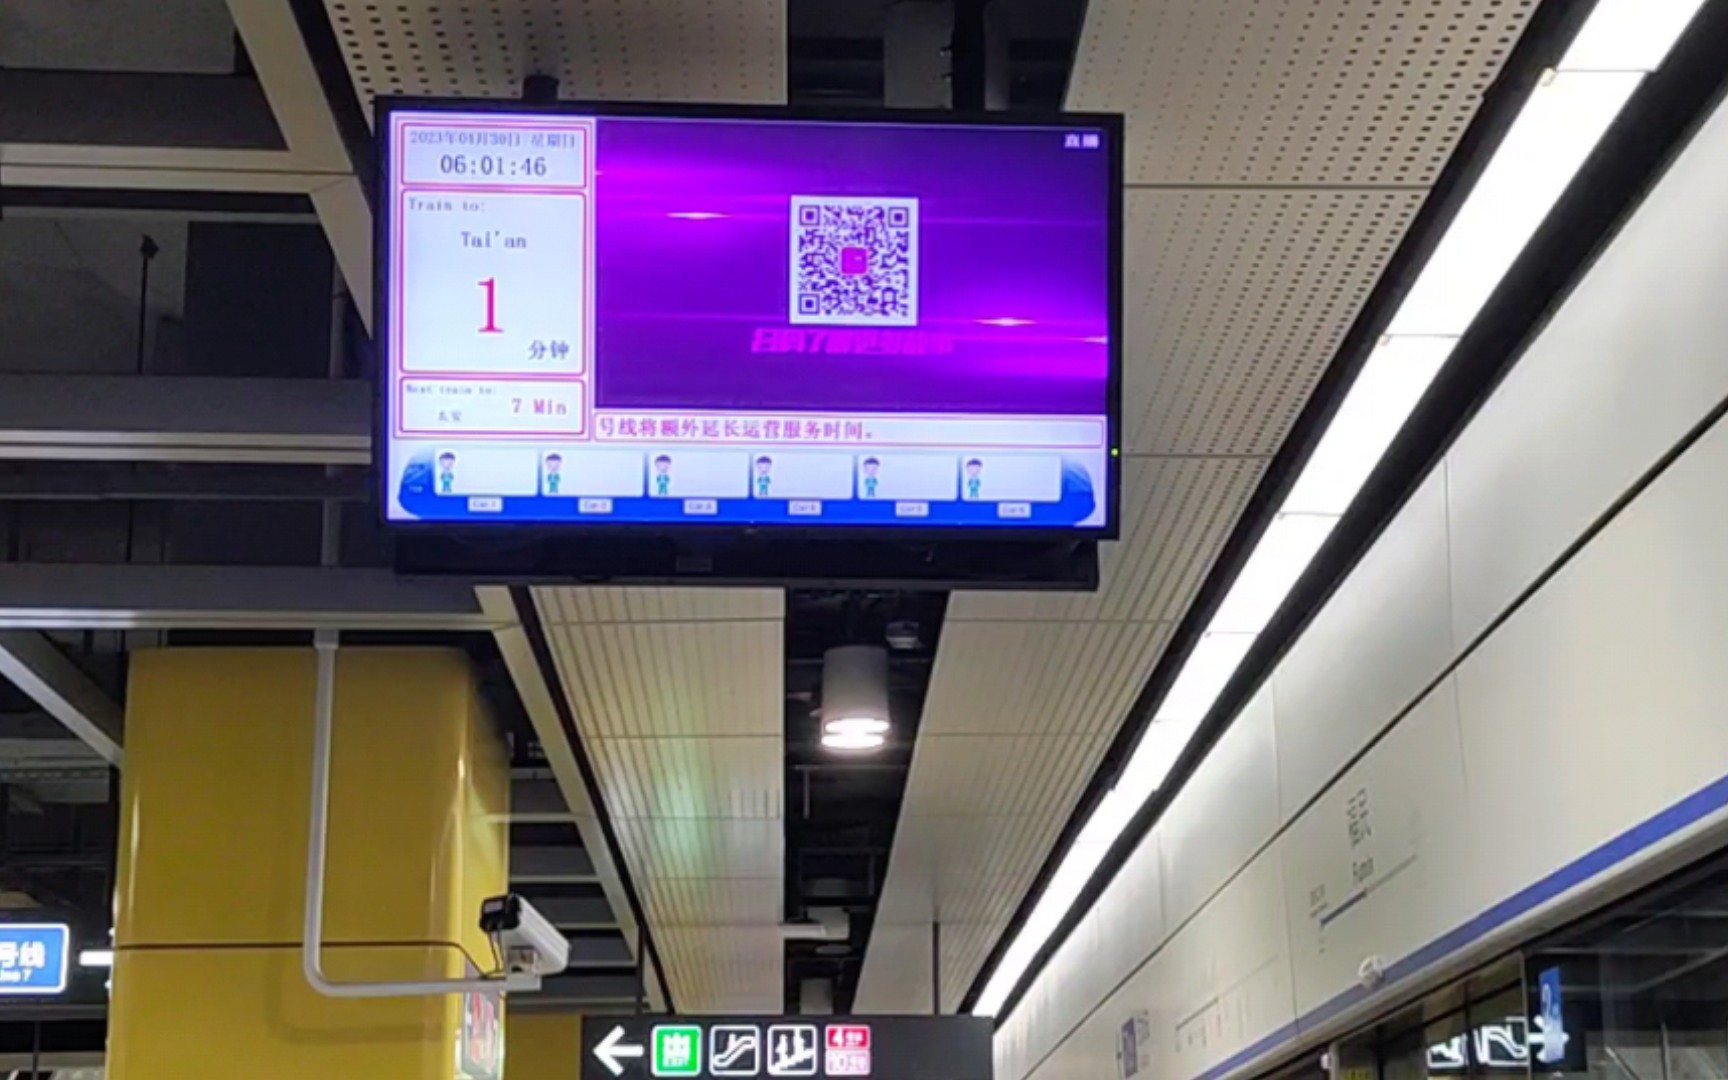 【深圳地铁】7号线福民站719车担当太安方向轧道车(载客首班车)进站